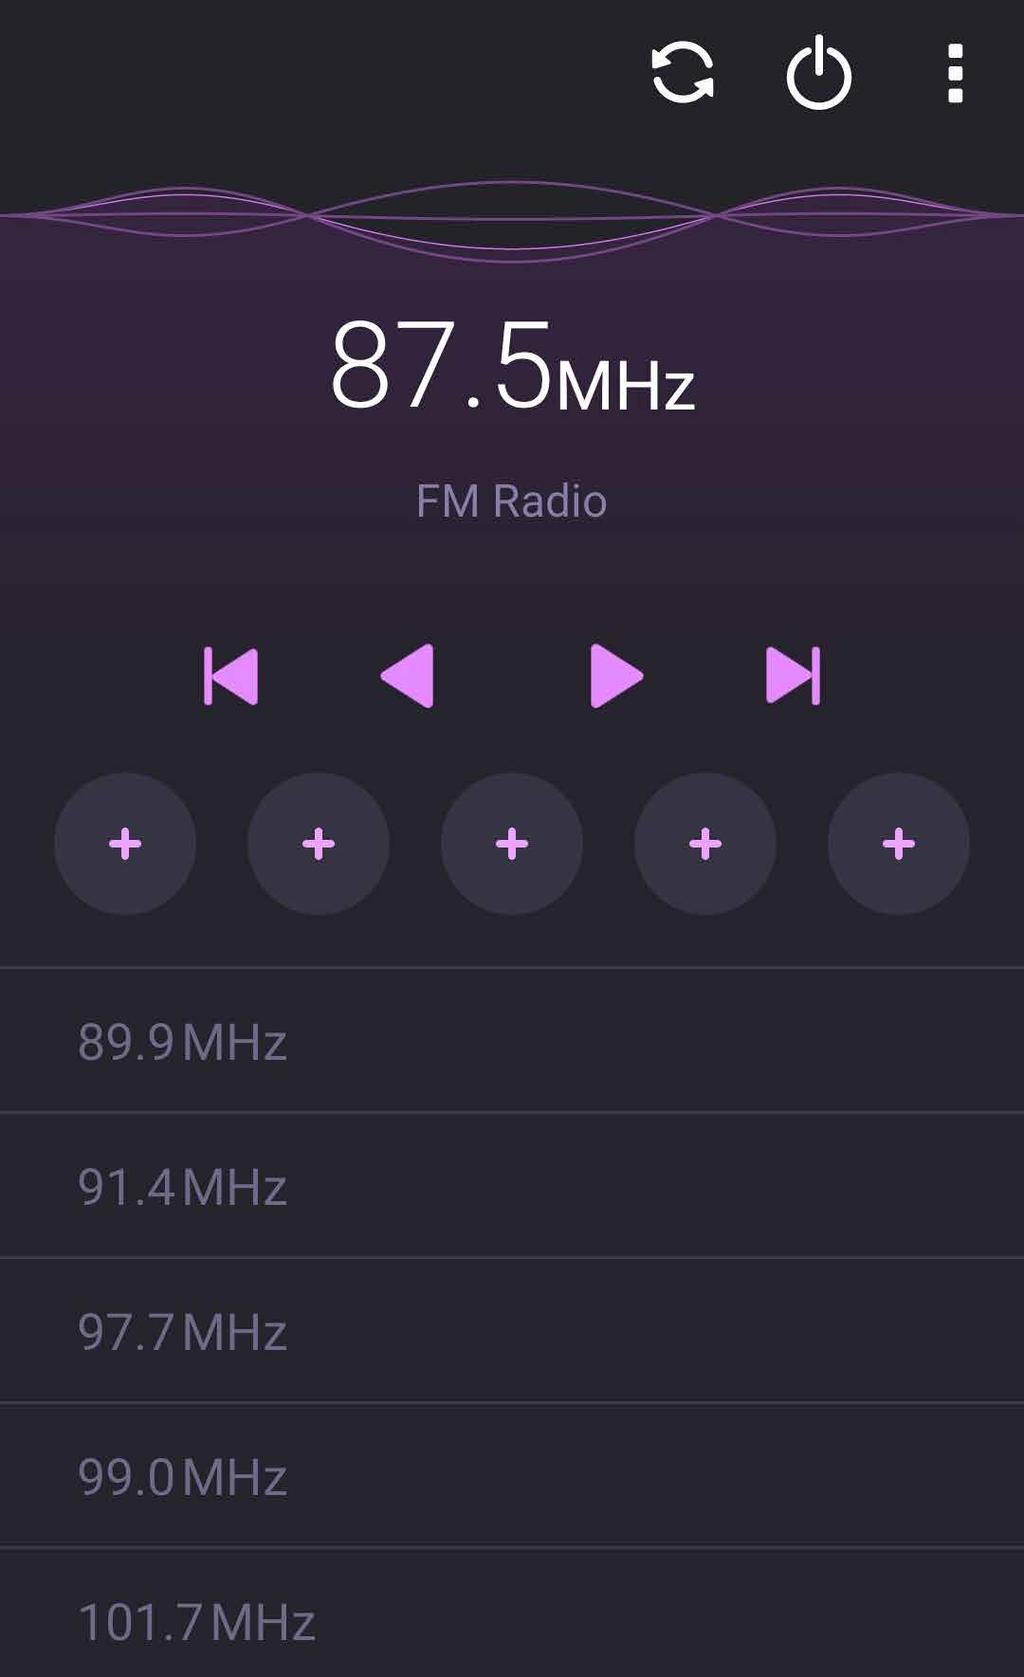 Radio FM Za pomocą telefonu ASUS można słuchać ulubionych lokalnych stacji radiowych. 1. Podłącz dołączony zestaw słuchawkowy do telefonu ASUS. 2. Stuknij kolejno pozycje > FM Radio (Radio FM).